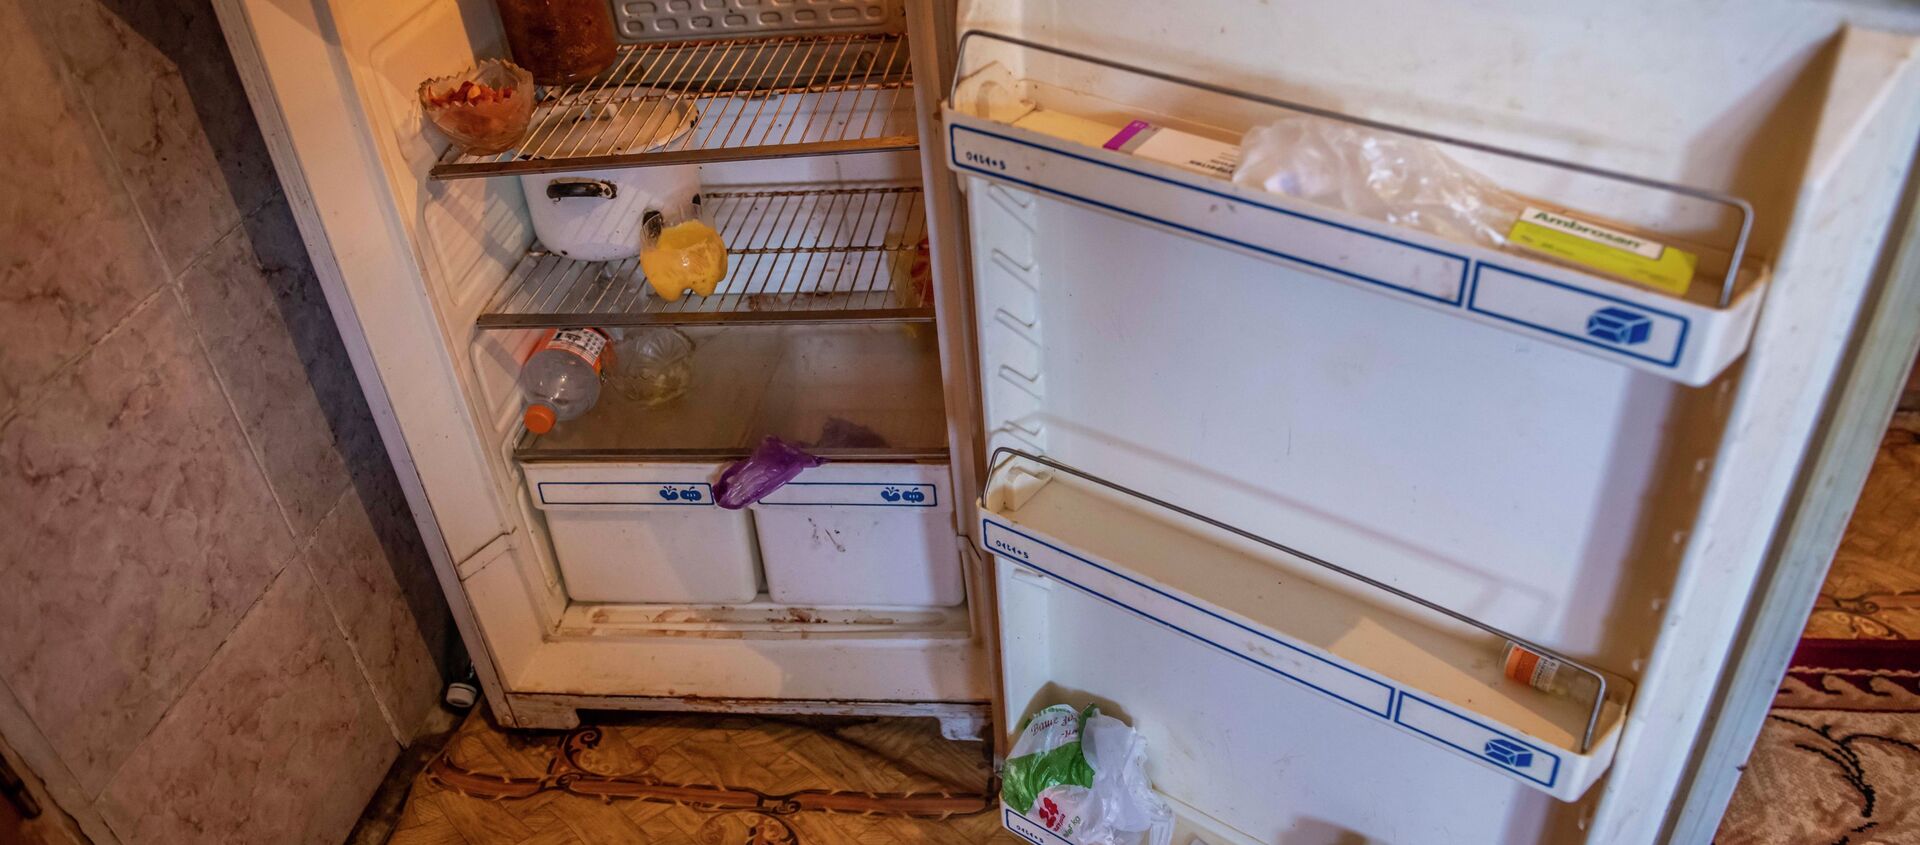 Холодильник в семье таксиста из новостройки Калыс-Ордо - Sputnik Кыргызстан, 1920, 17.08.2021